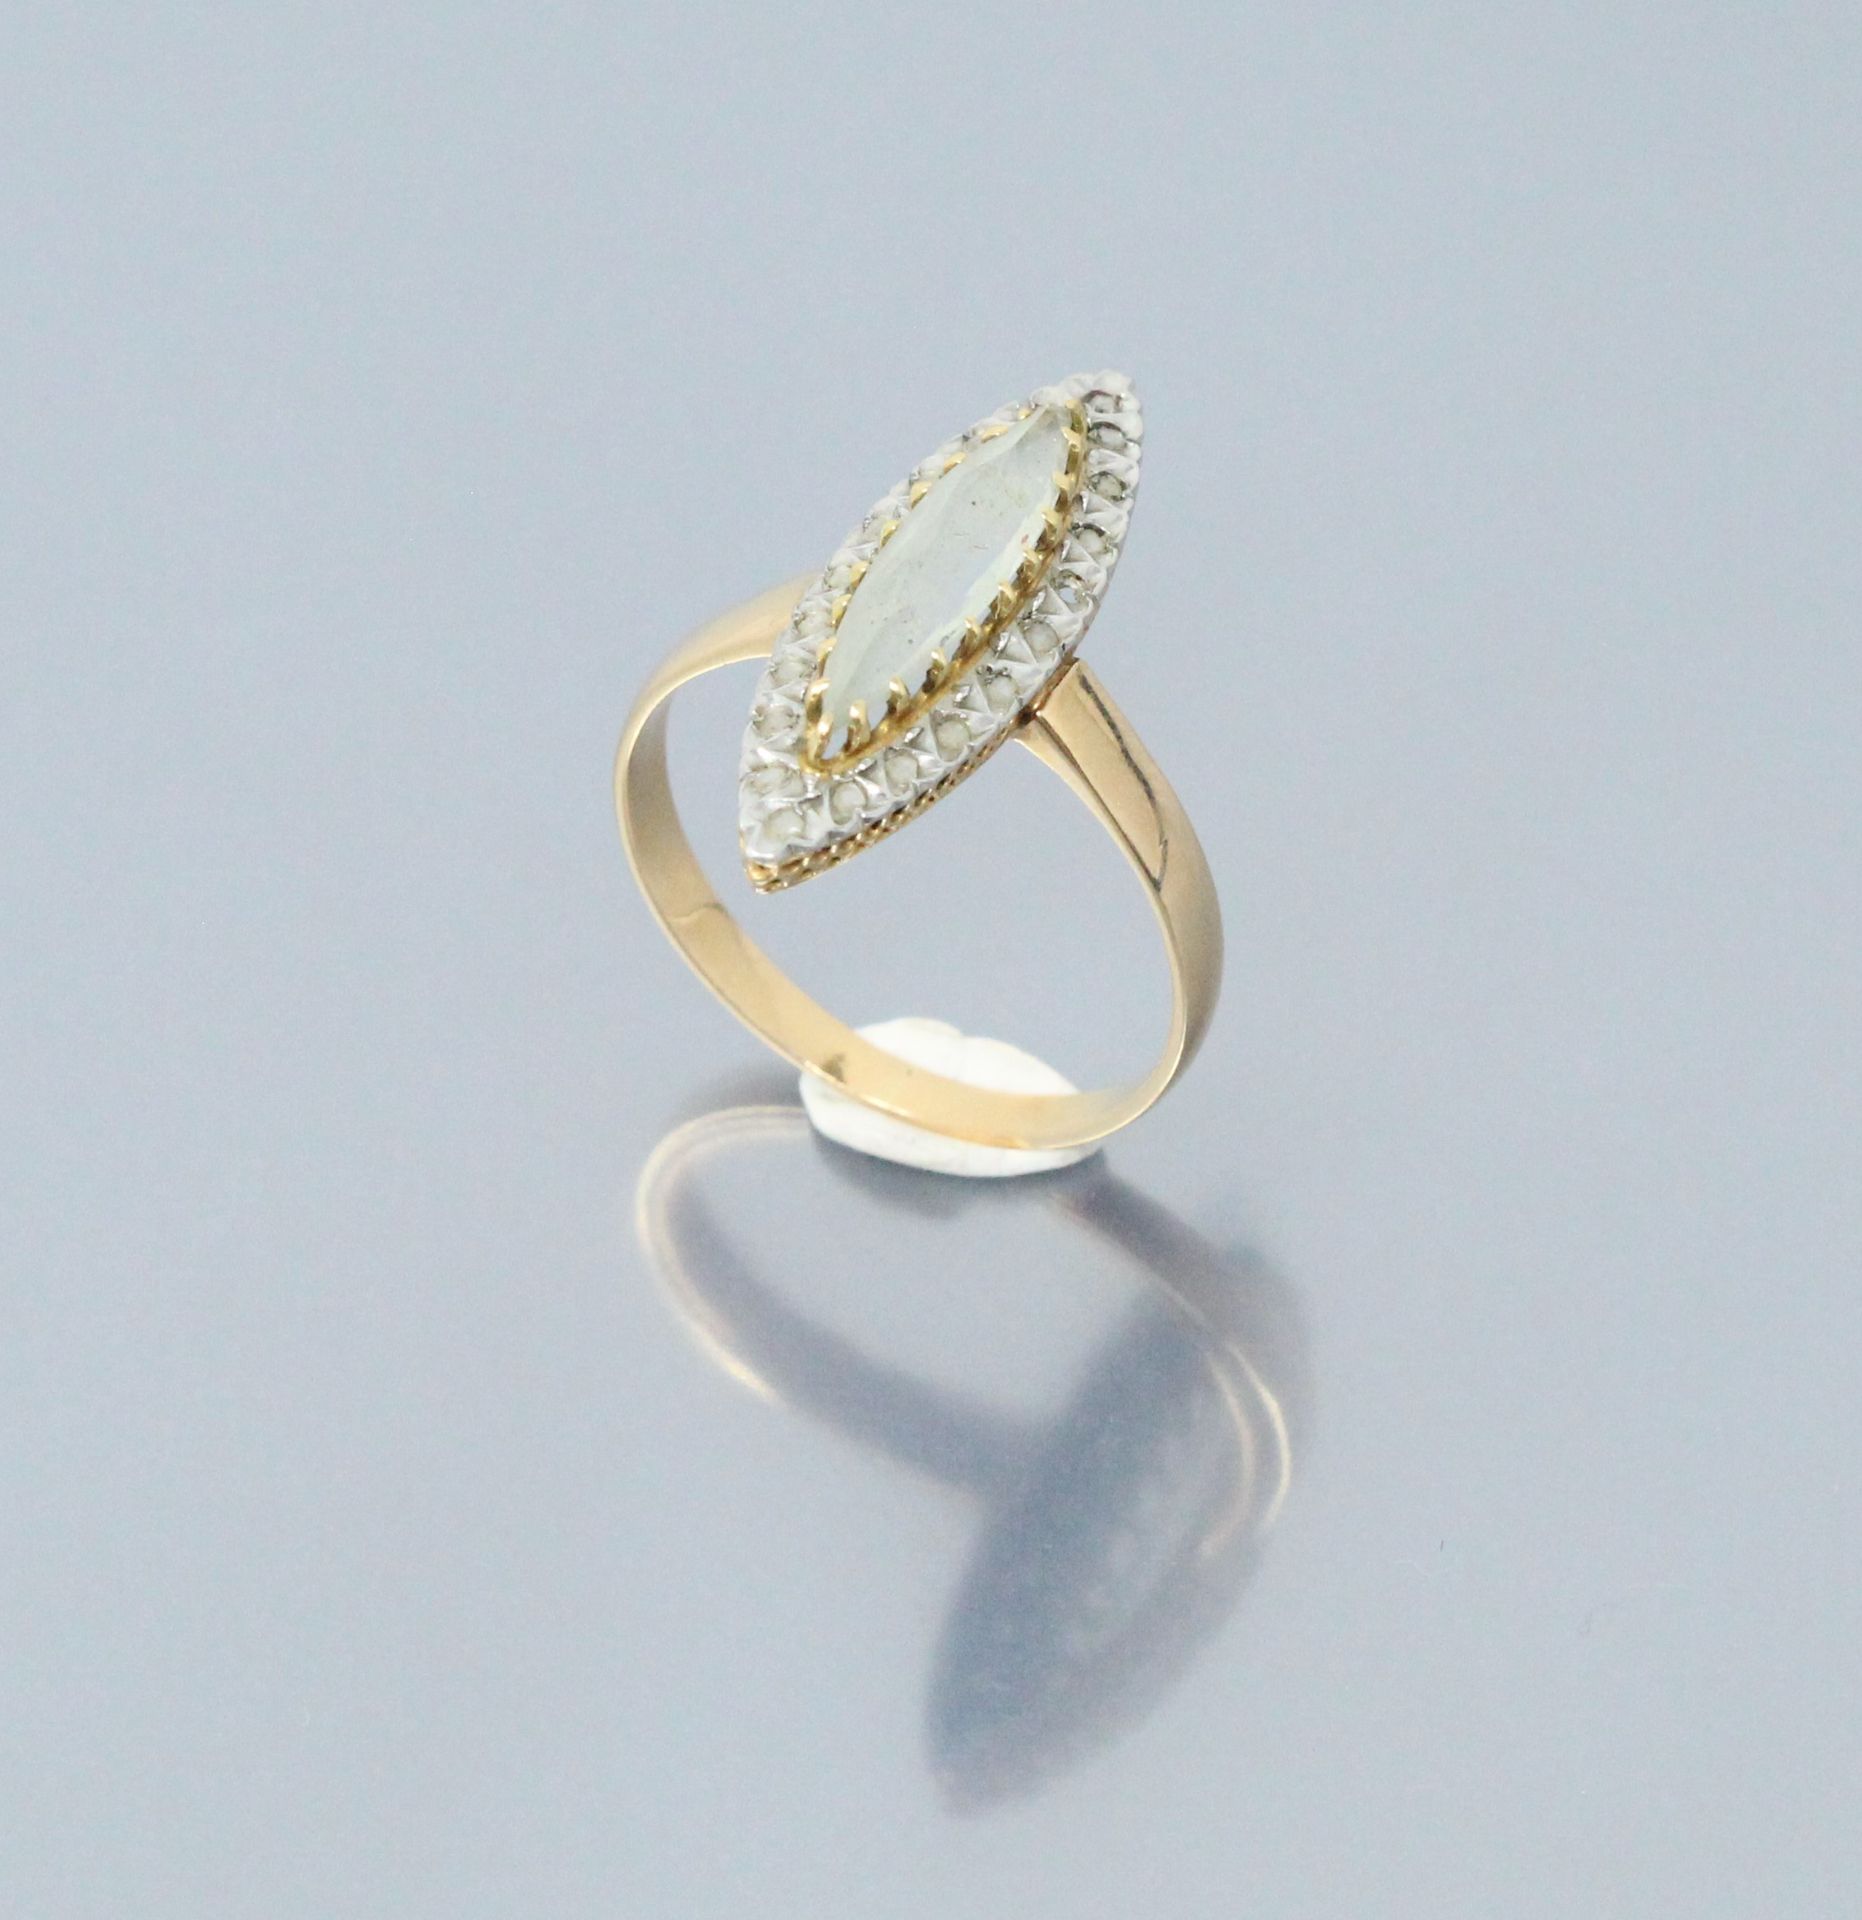 Null 18k(750)黄金和白金脐带戒指，在钻石底座上镶嵌了一颗精美的脐带石（缺失）。

手指大小：60 - 重量：3.30克。